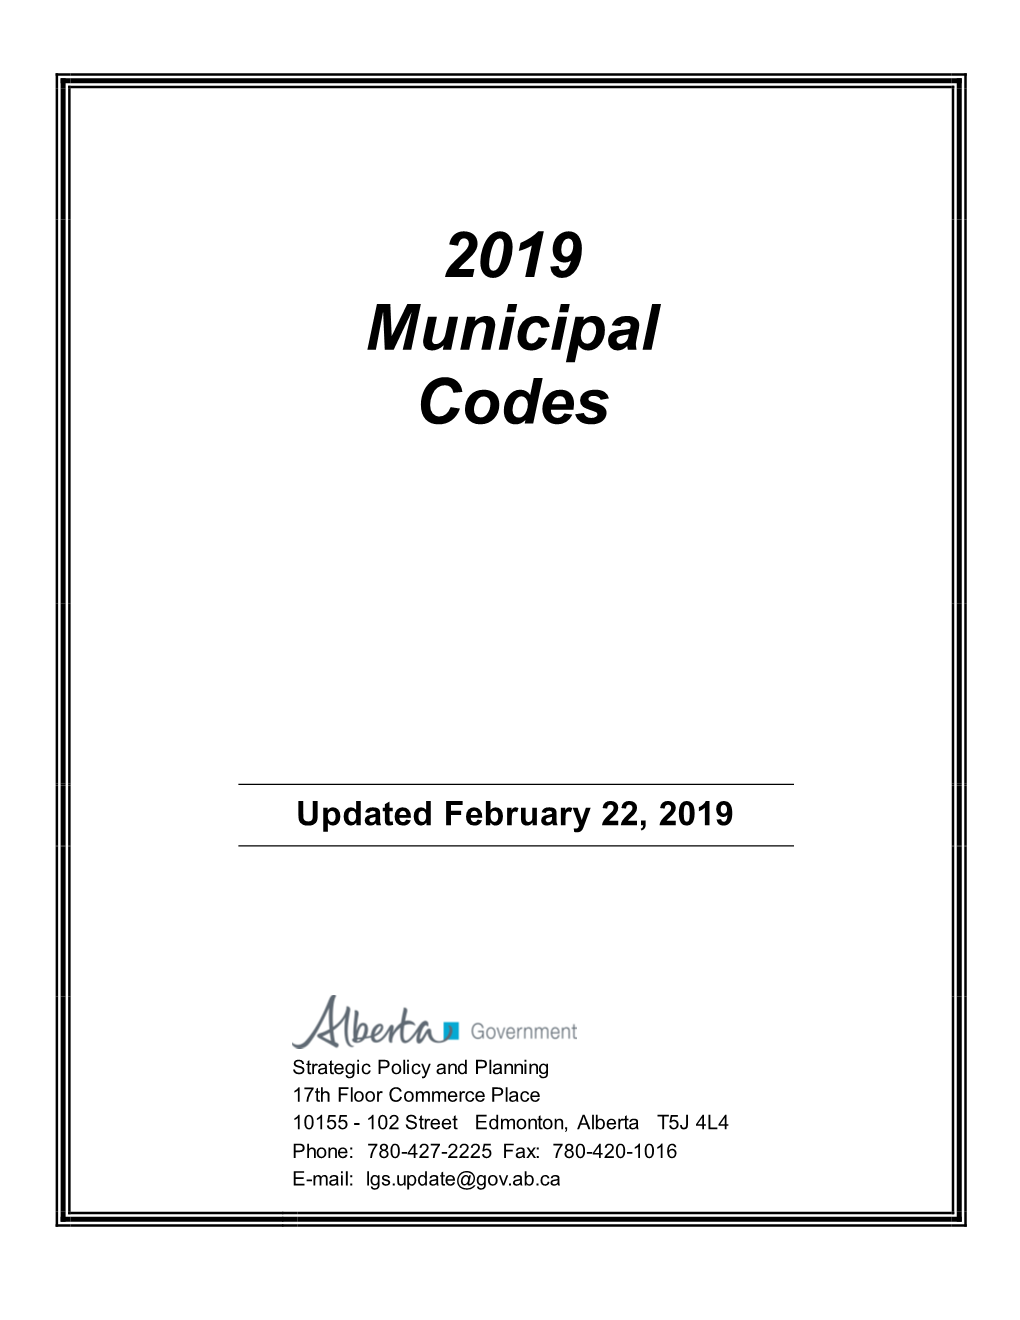 2019 Municipal Codes